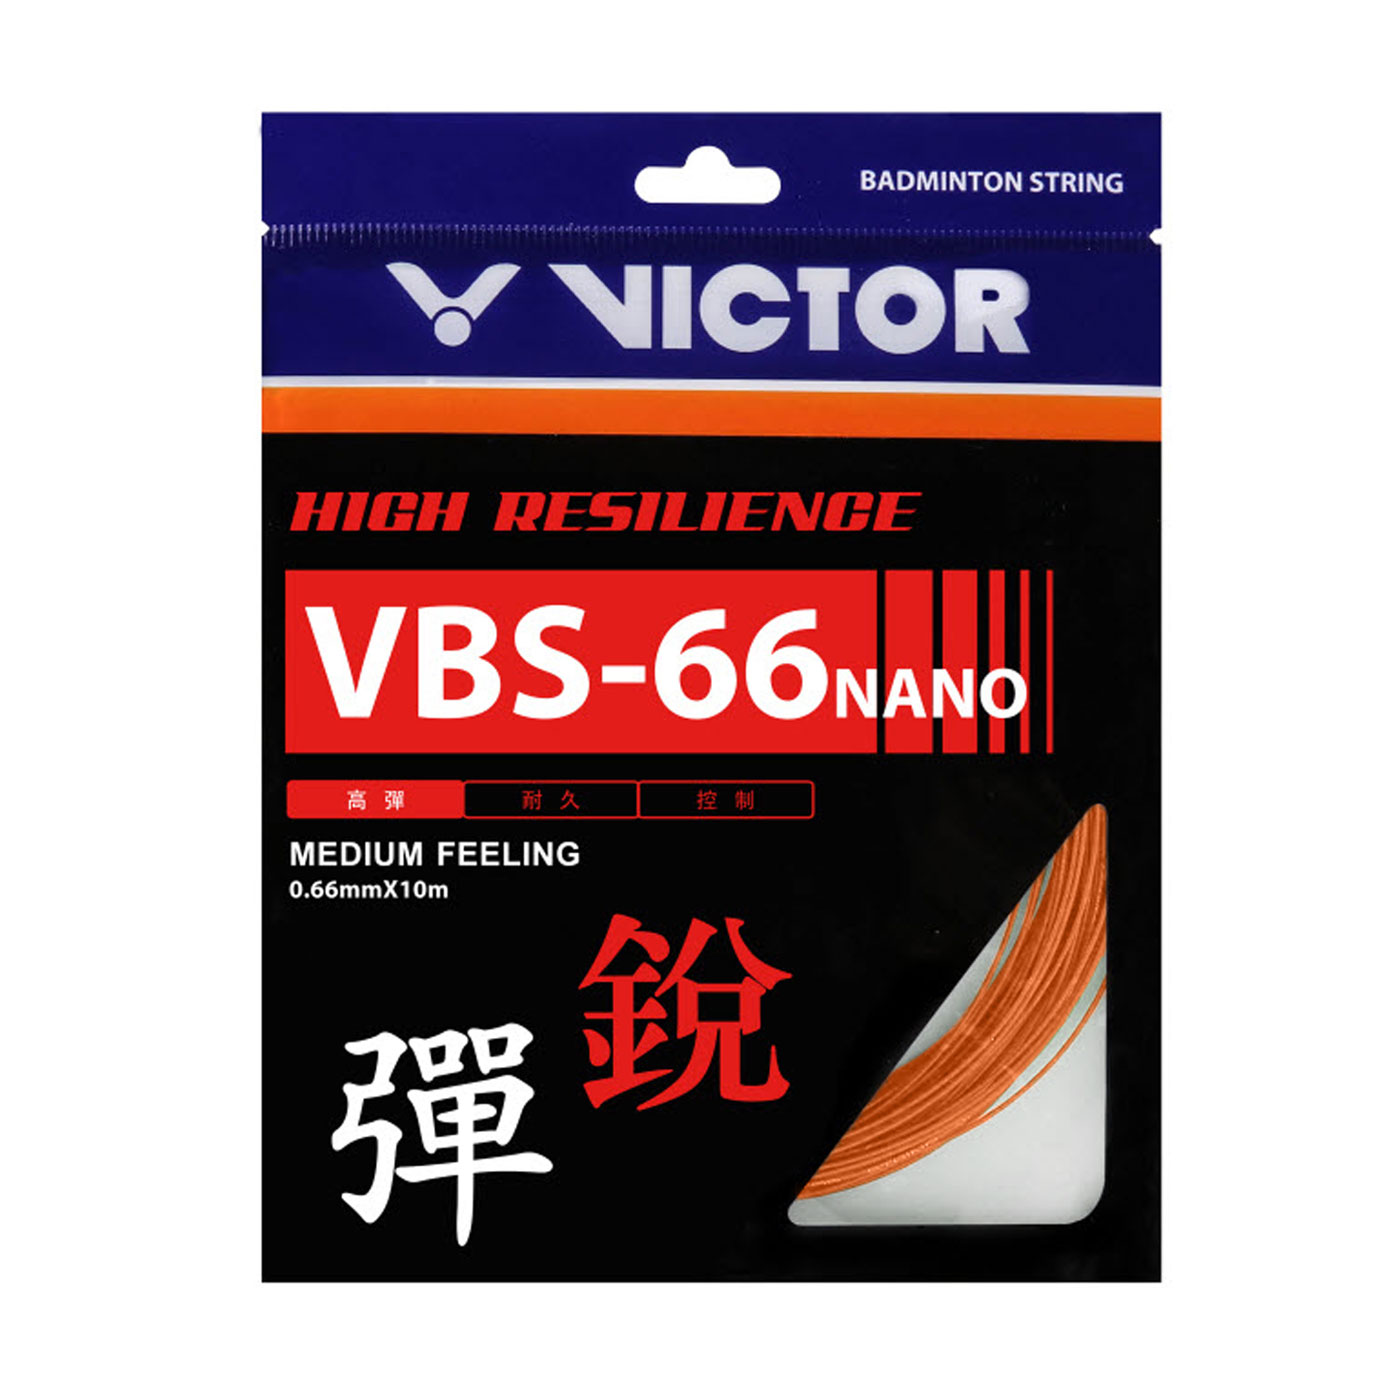 VICTOR 特定-高彈羽拍線-銳 VBS-66N-O - 橘